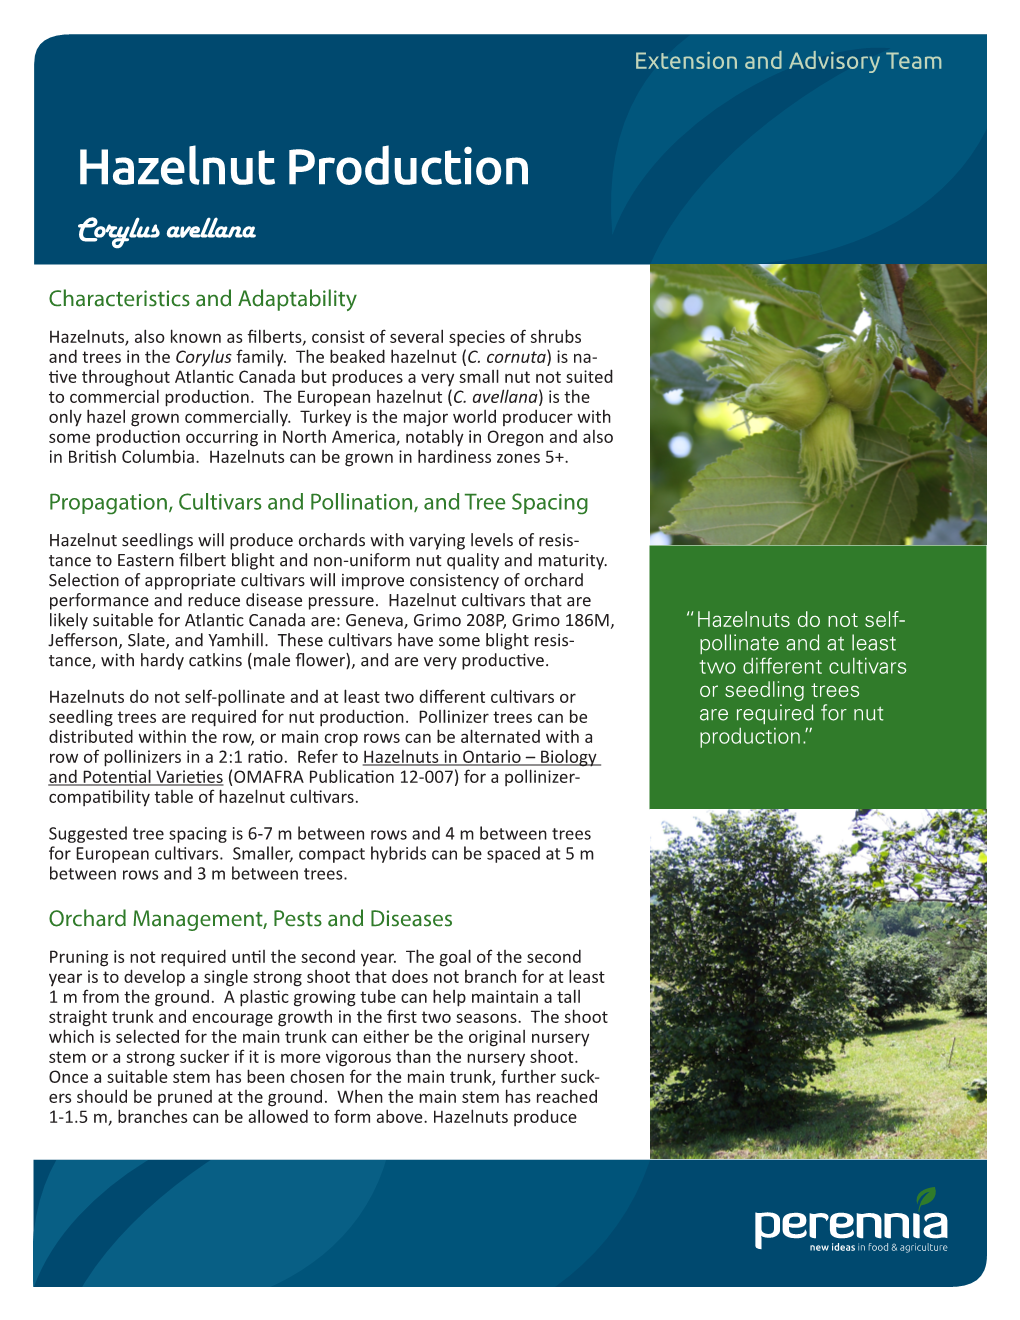 Hazelnut Production